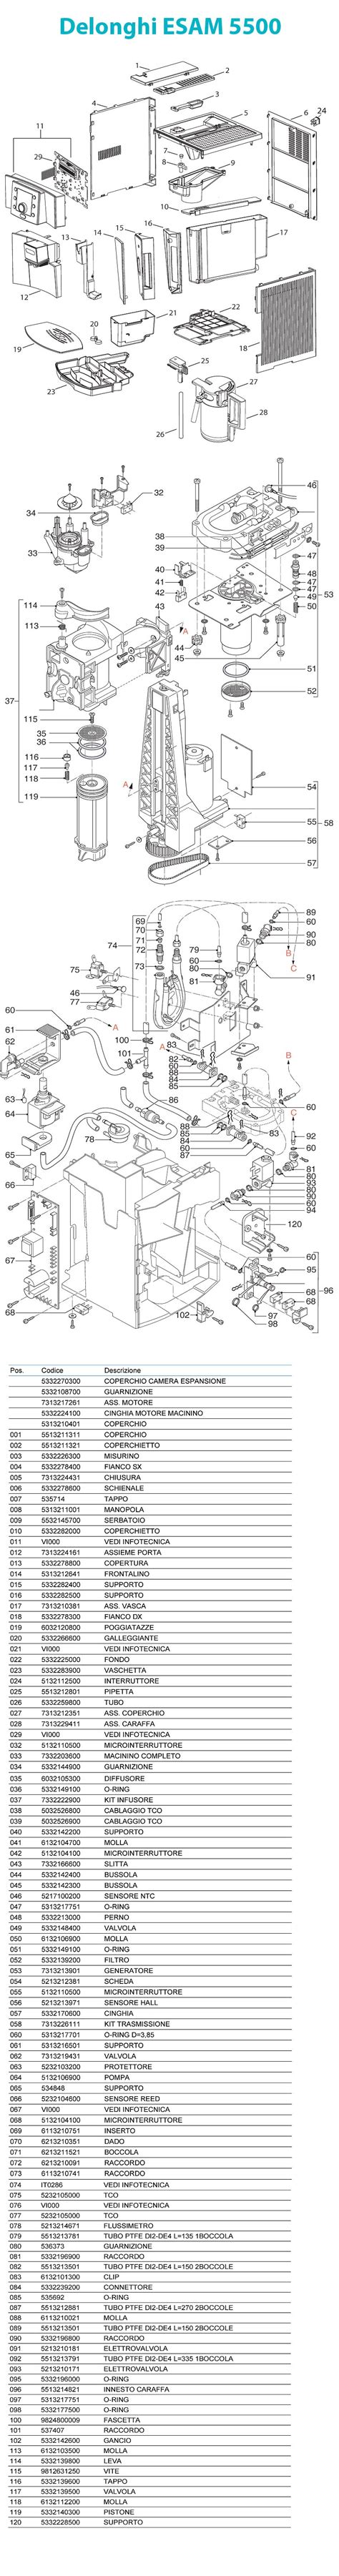 delonghi magnifica parts diagram  wiring diagram